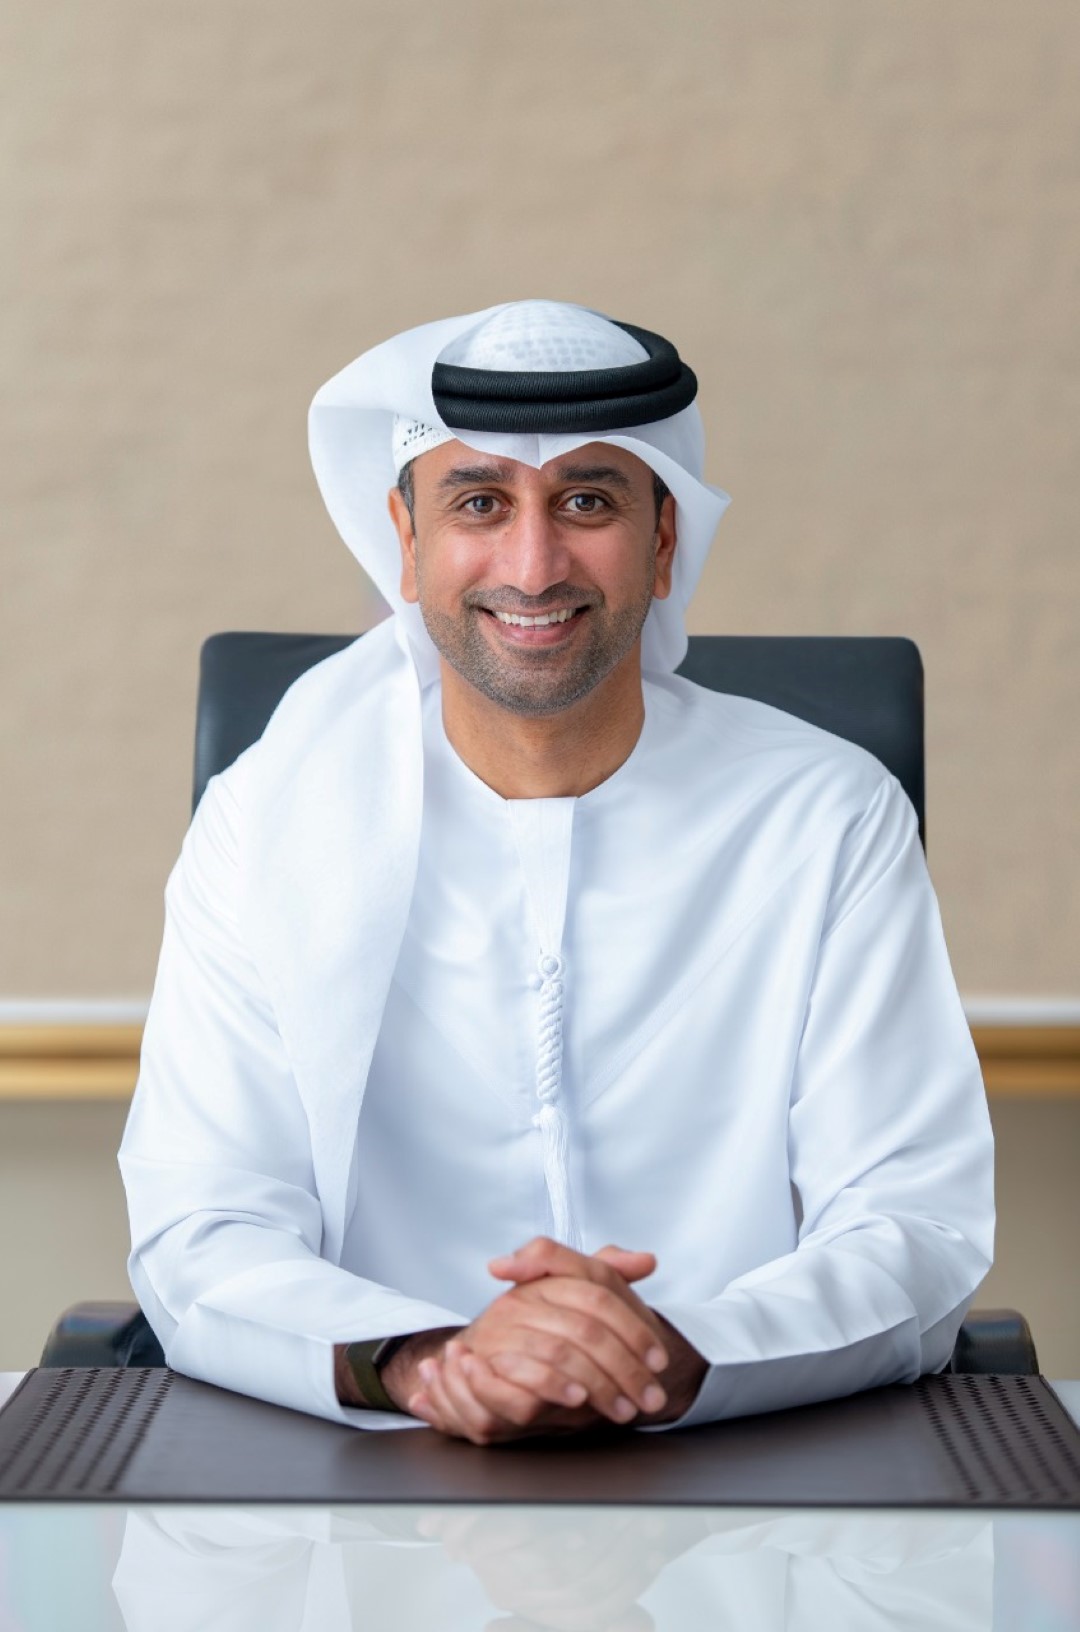 “الإمارات للاتصالات المتكاملة” تعلن عن نتائجها المالية للربع الأول من العام 2022 2341